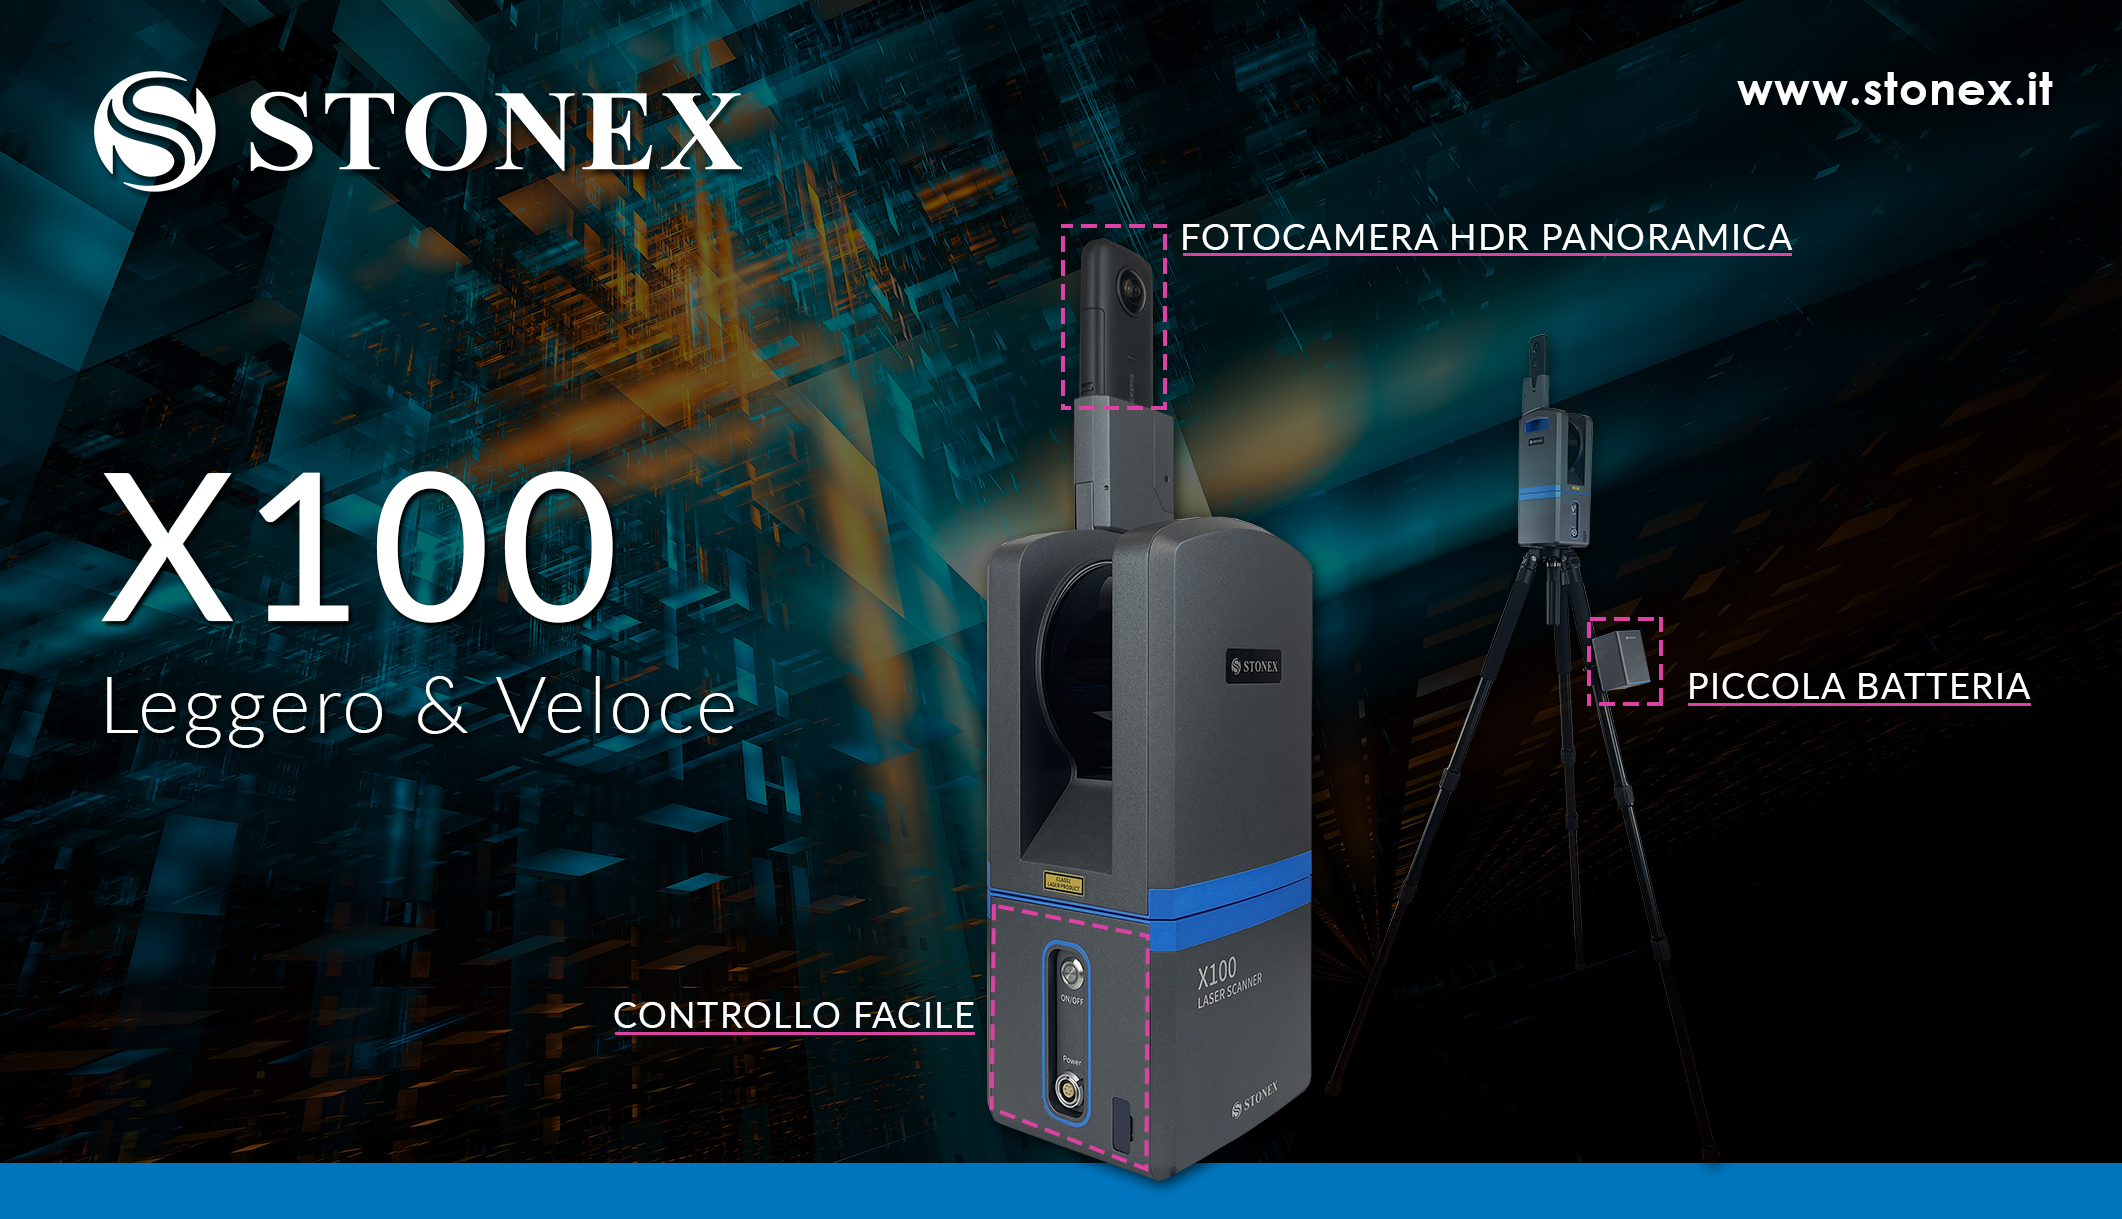 Stonex X100, laser scanner ideale per scansioni sia in interni che esterni